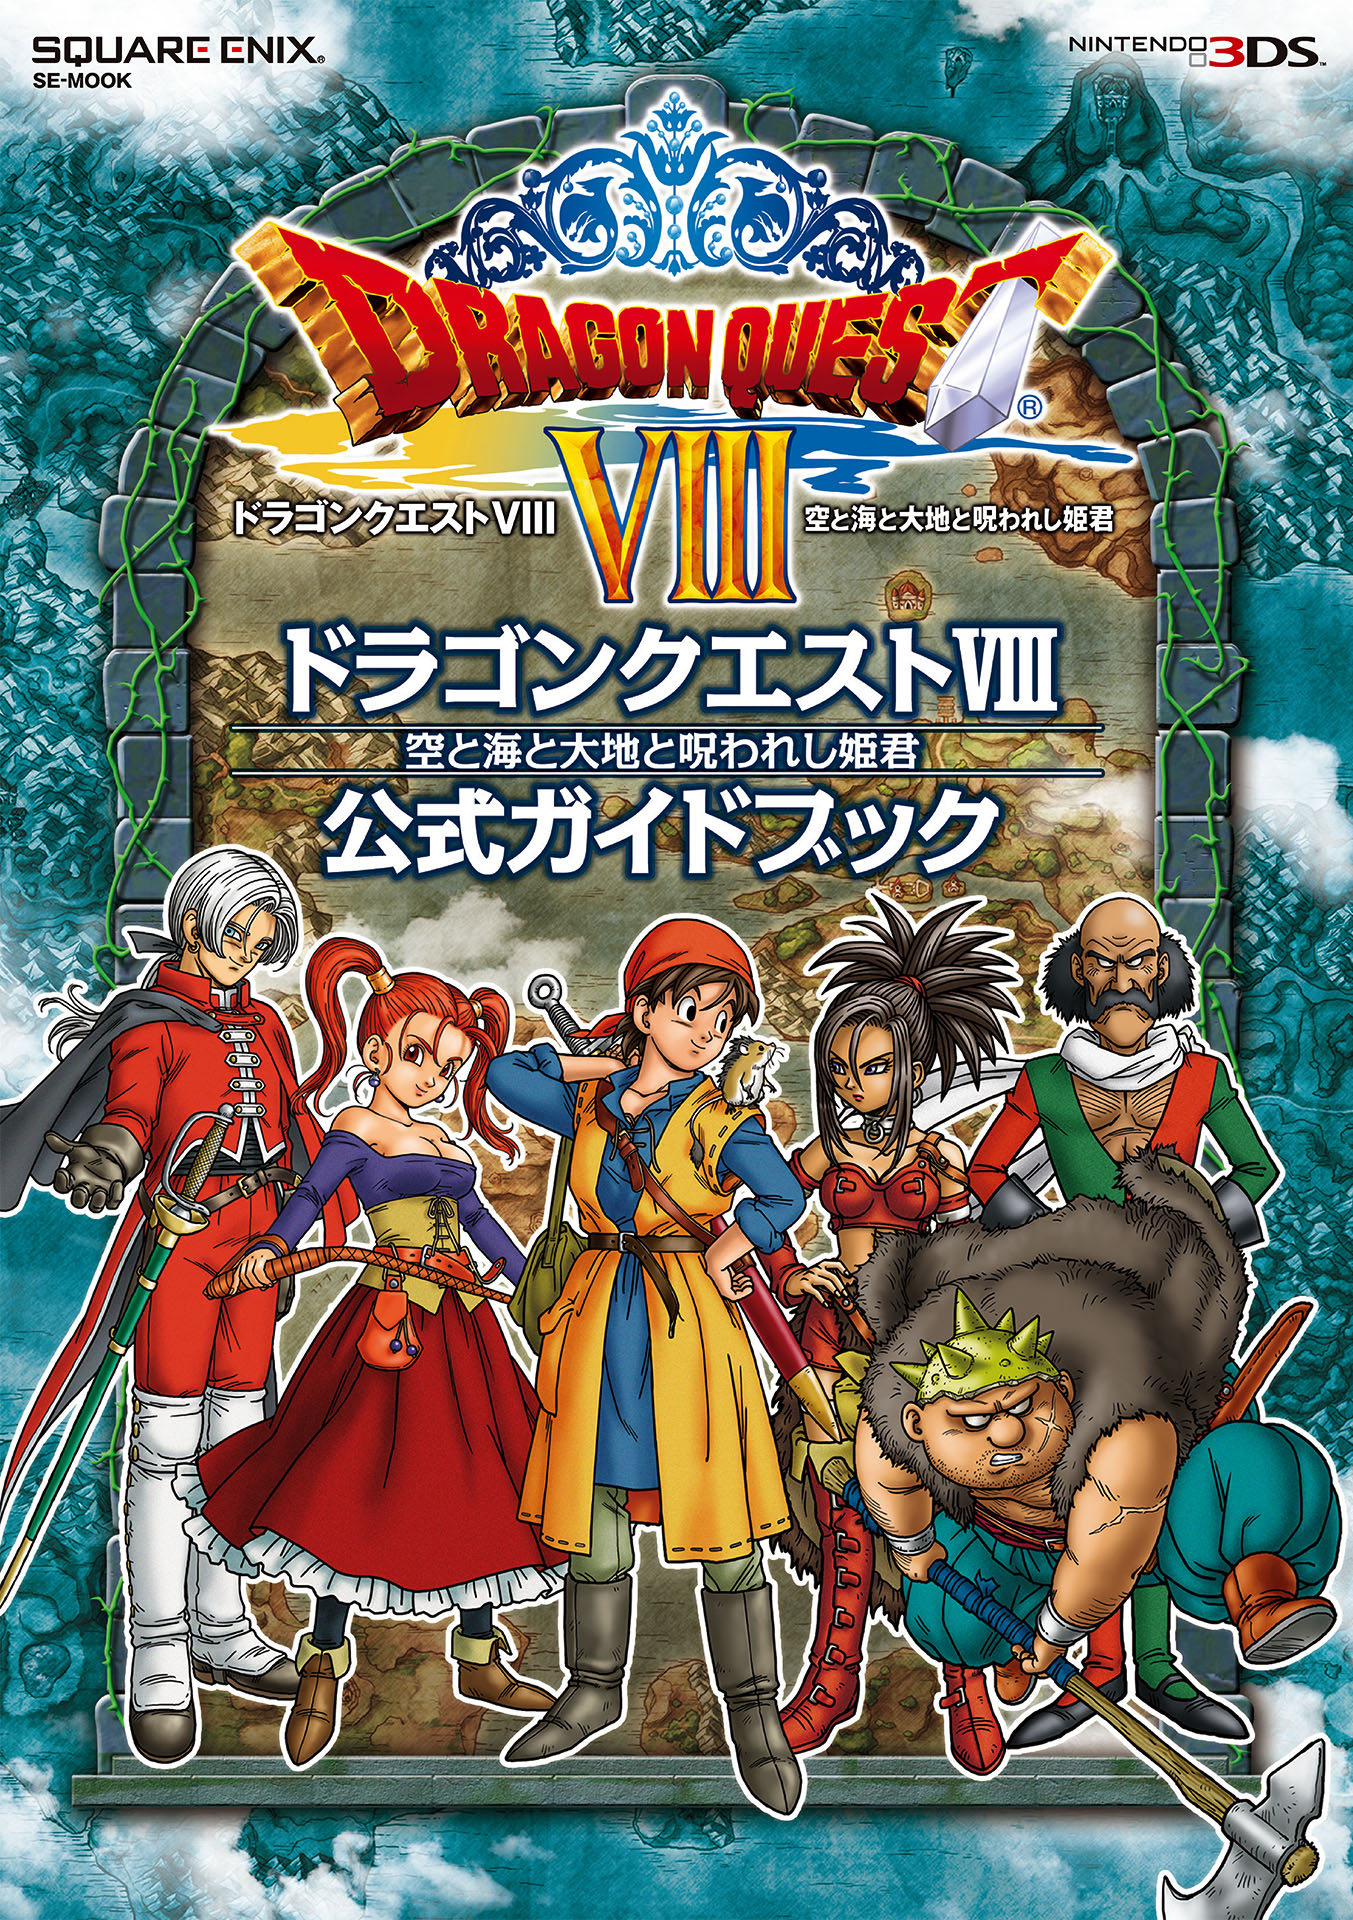 販売特売中 DS 3DS ドラゴンクエストV. VII .VIII .IX. XI - テレビゲーム